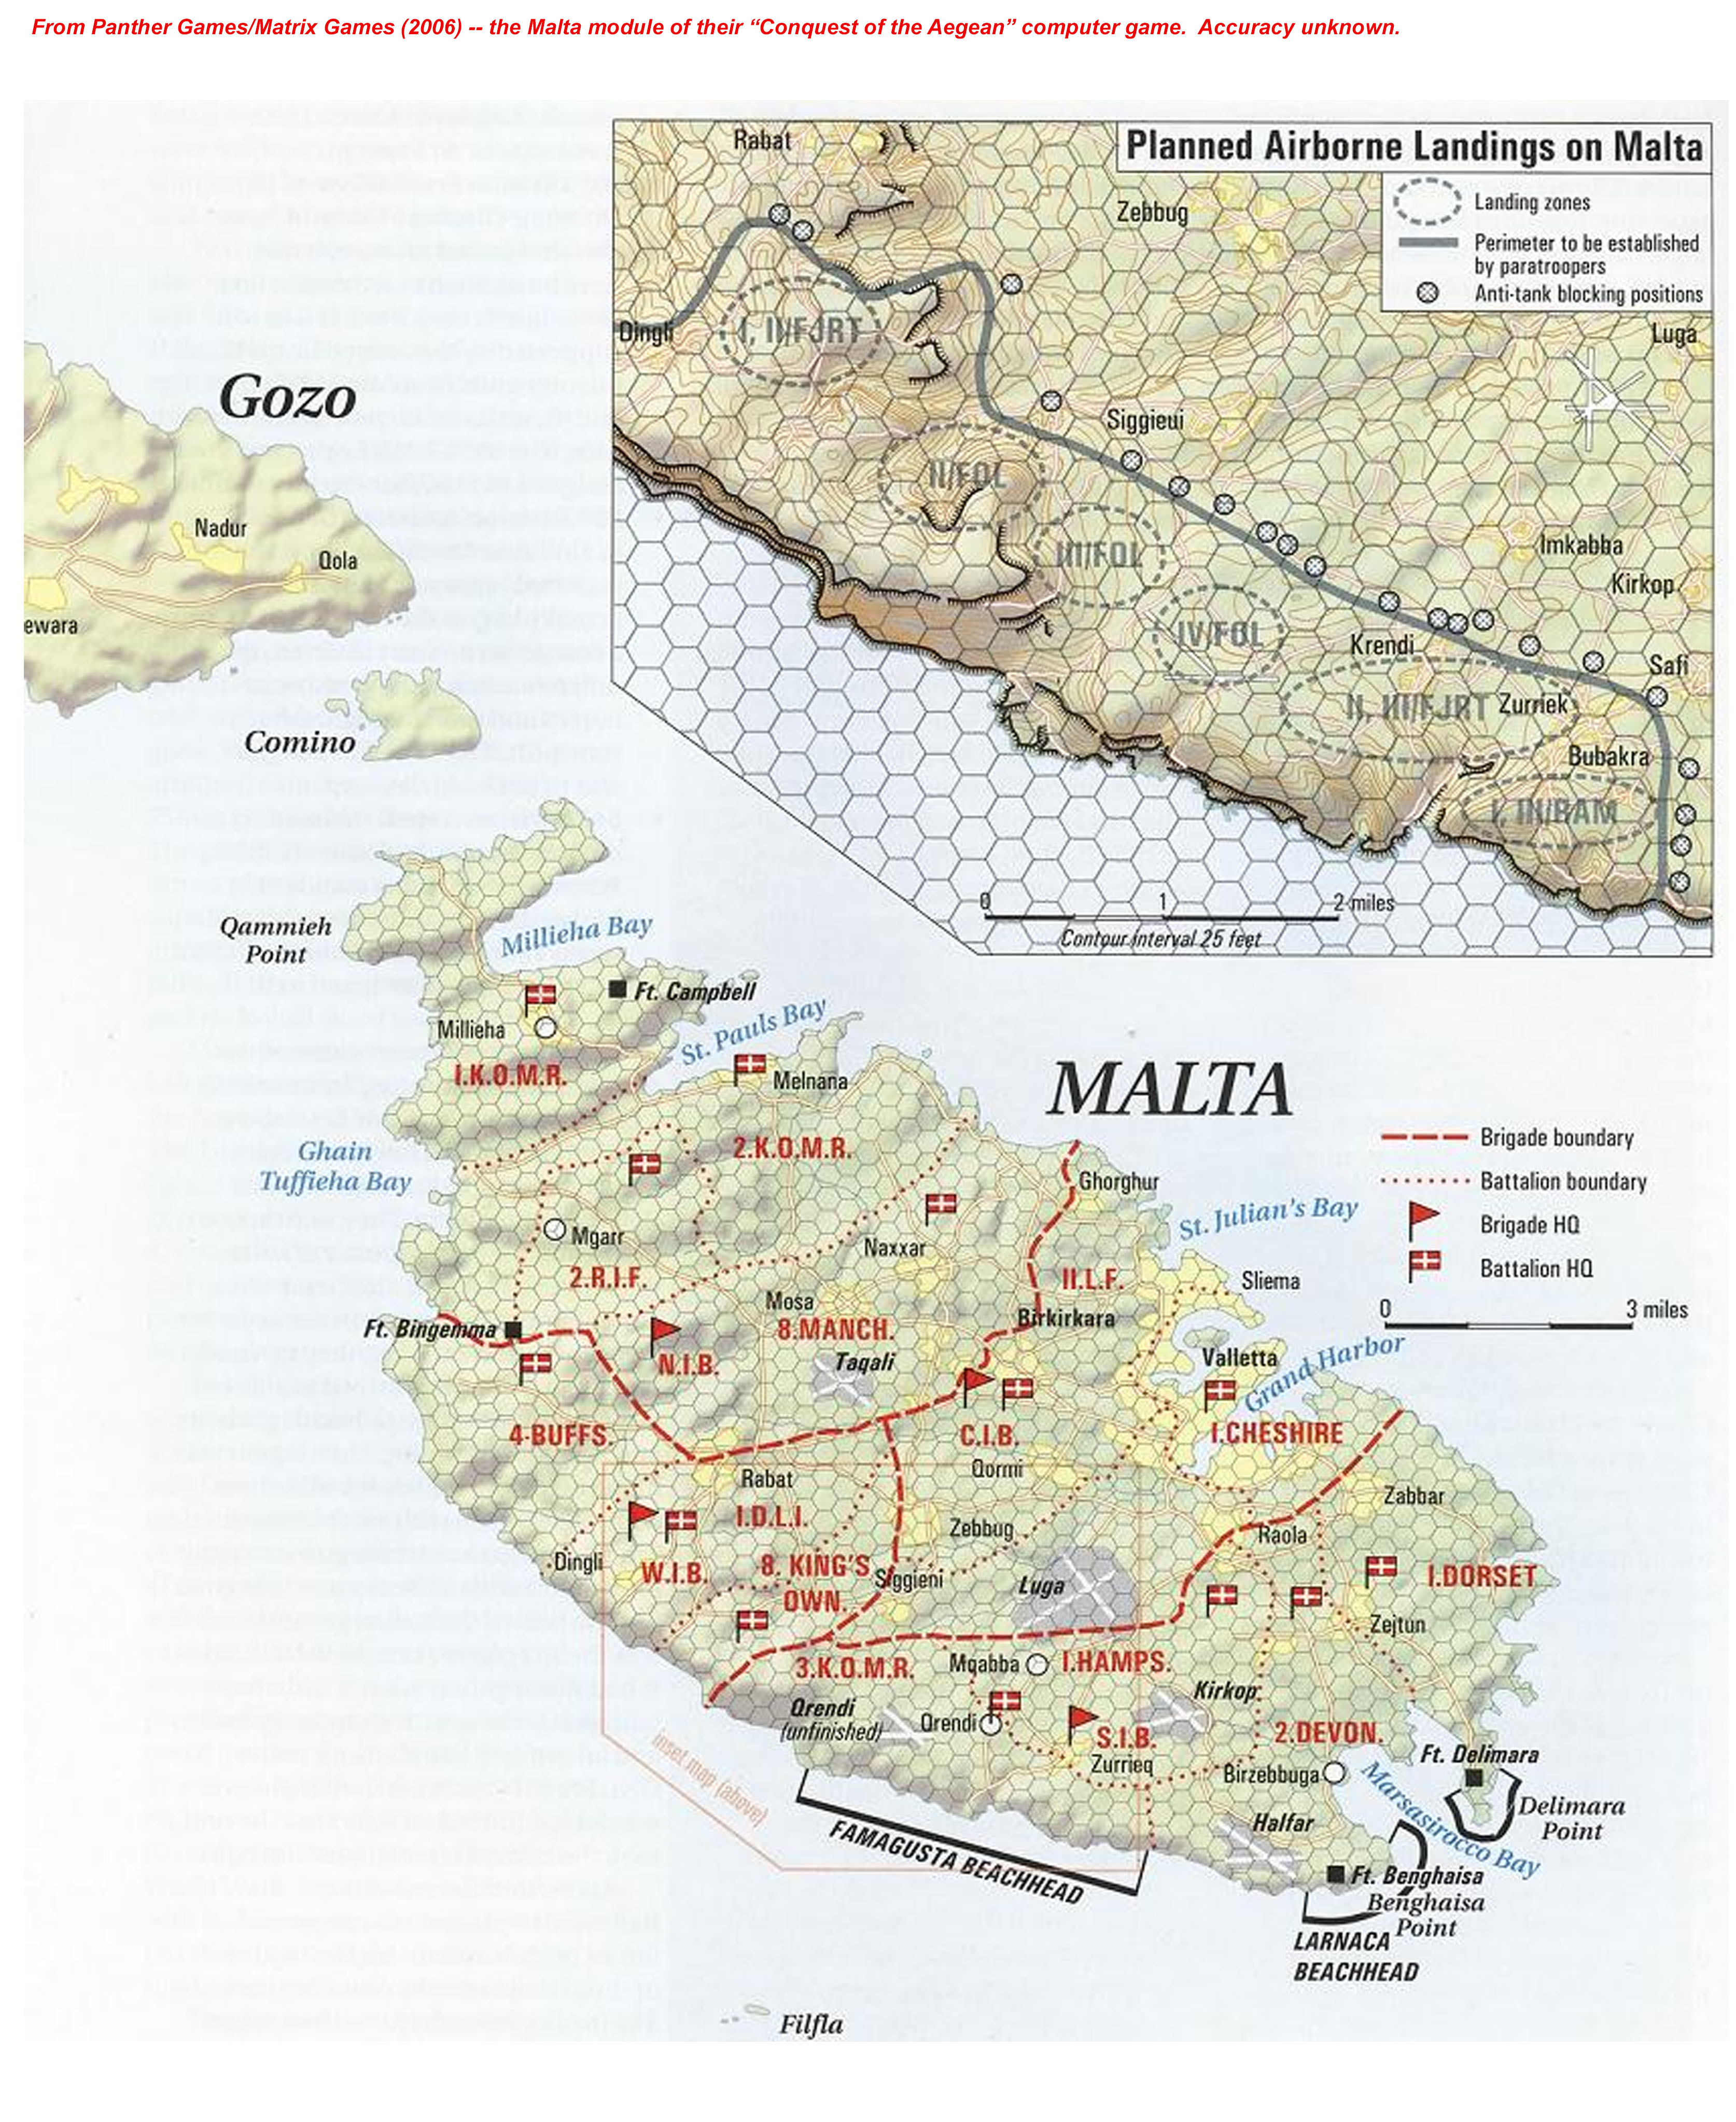 Panther-Matrix Games Malta maps.jpg